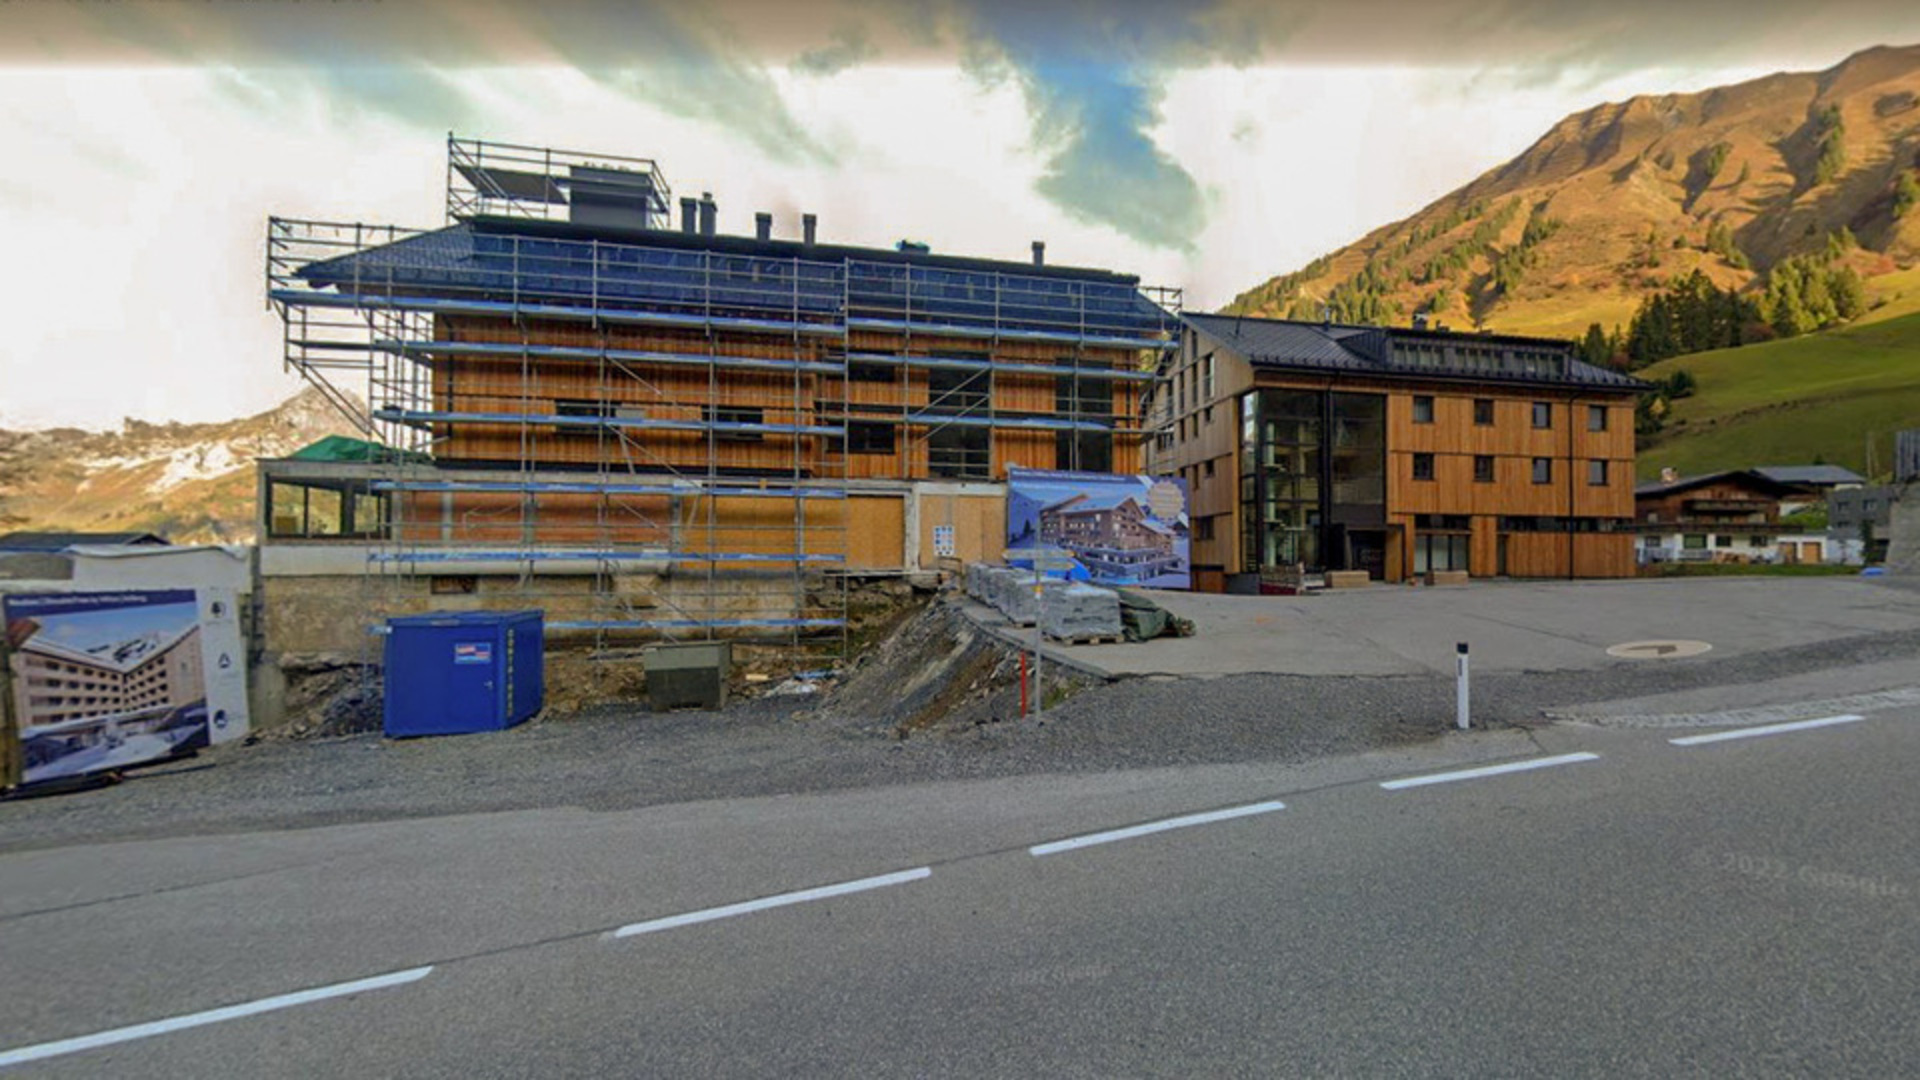 Investiční apartmány v lyžařském středisku Nasslegg - Schröcken